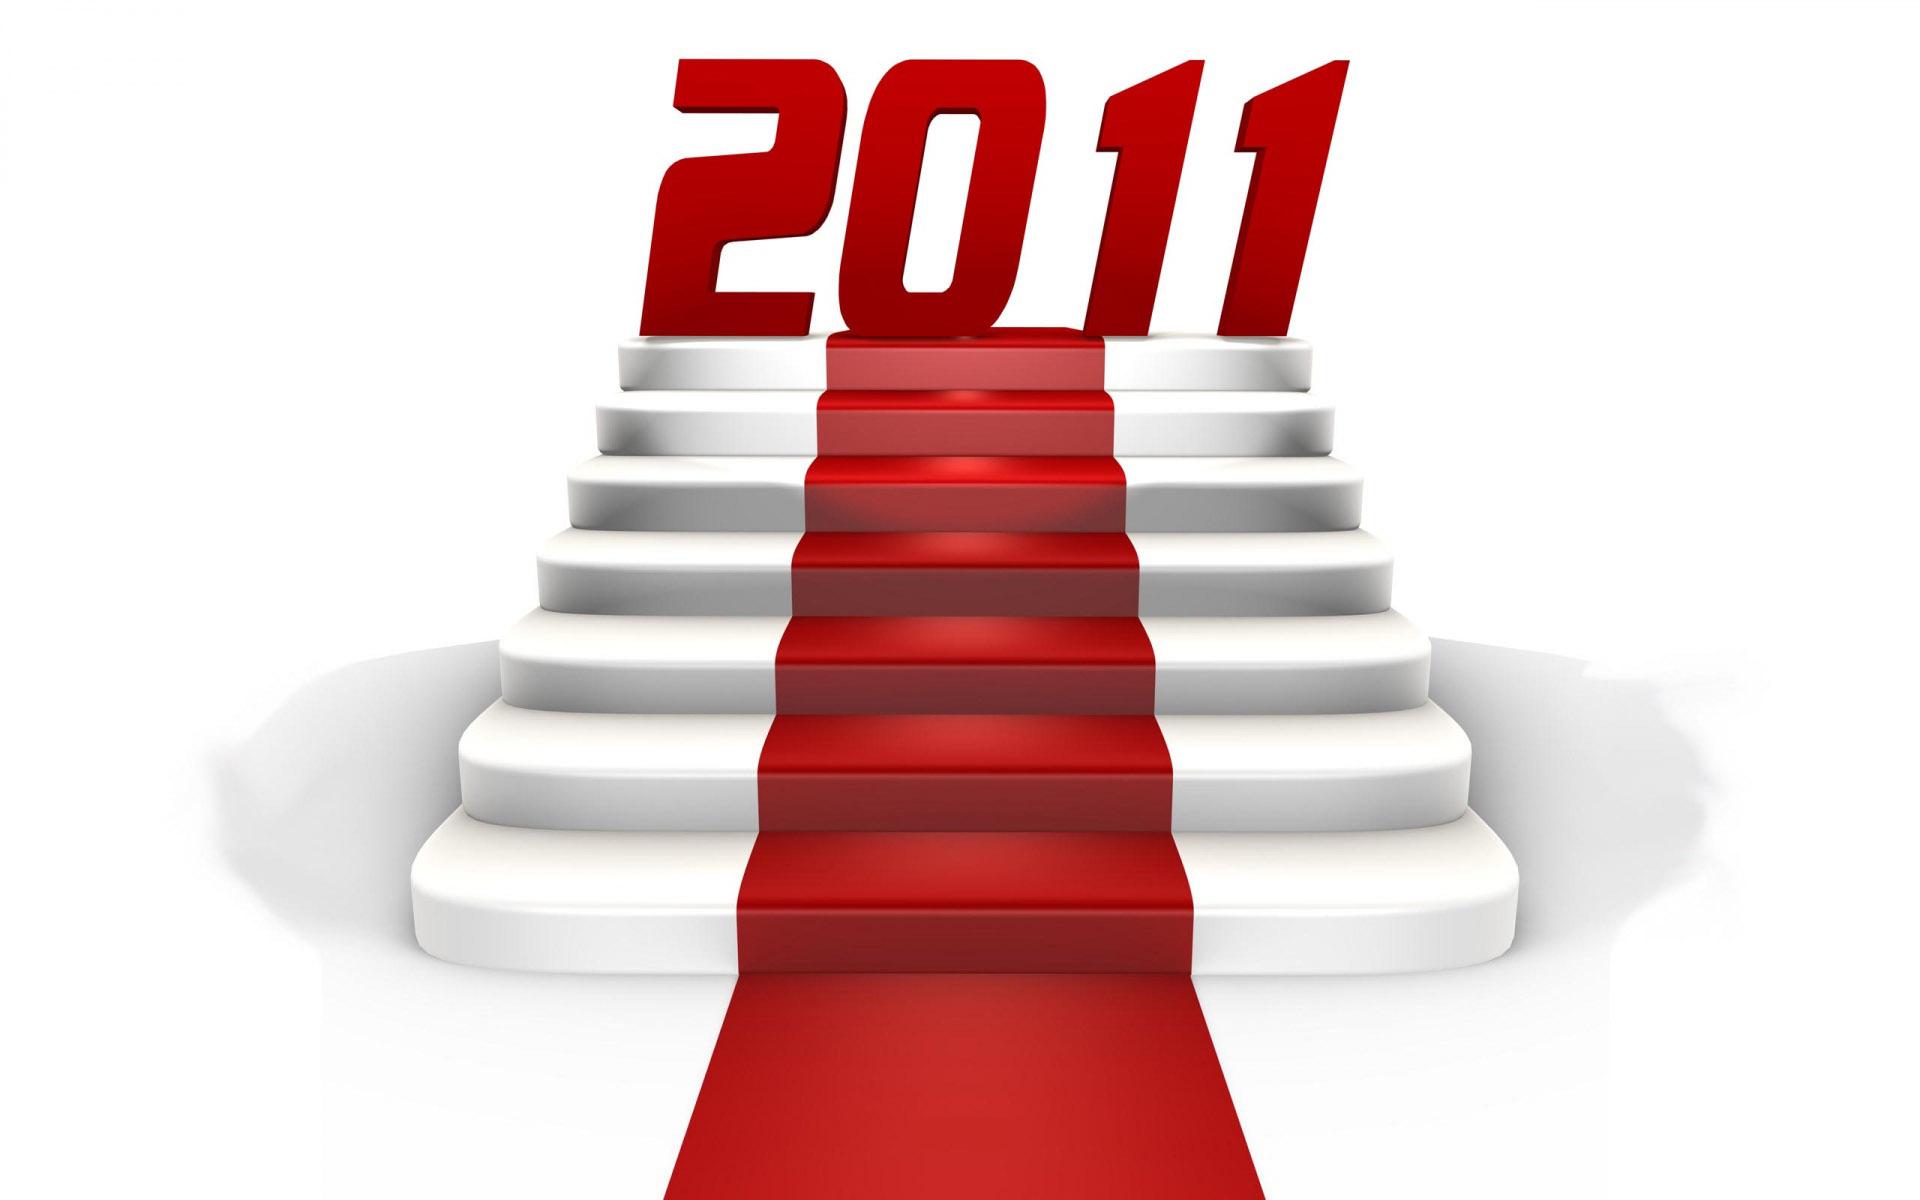 Le Blog Coiffure vous présente ses meilleurs voeux pour l'année 2011 !